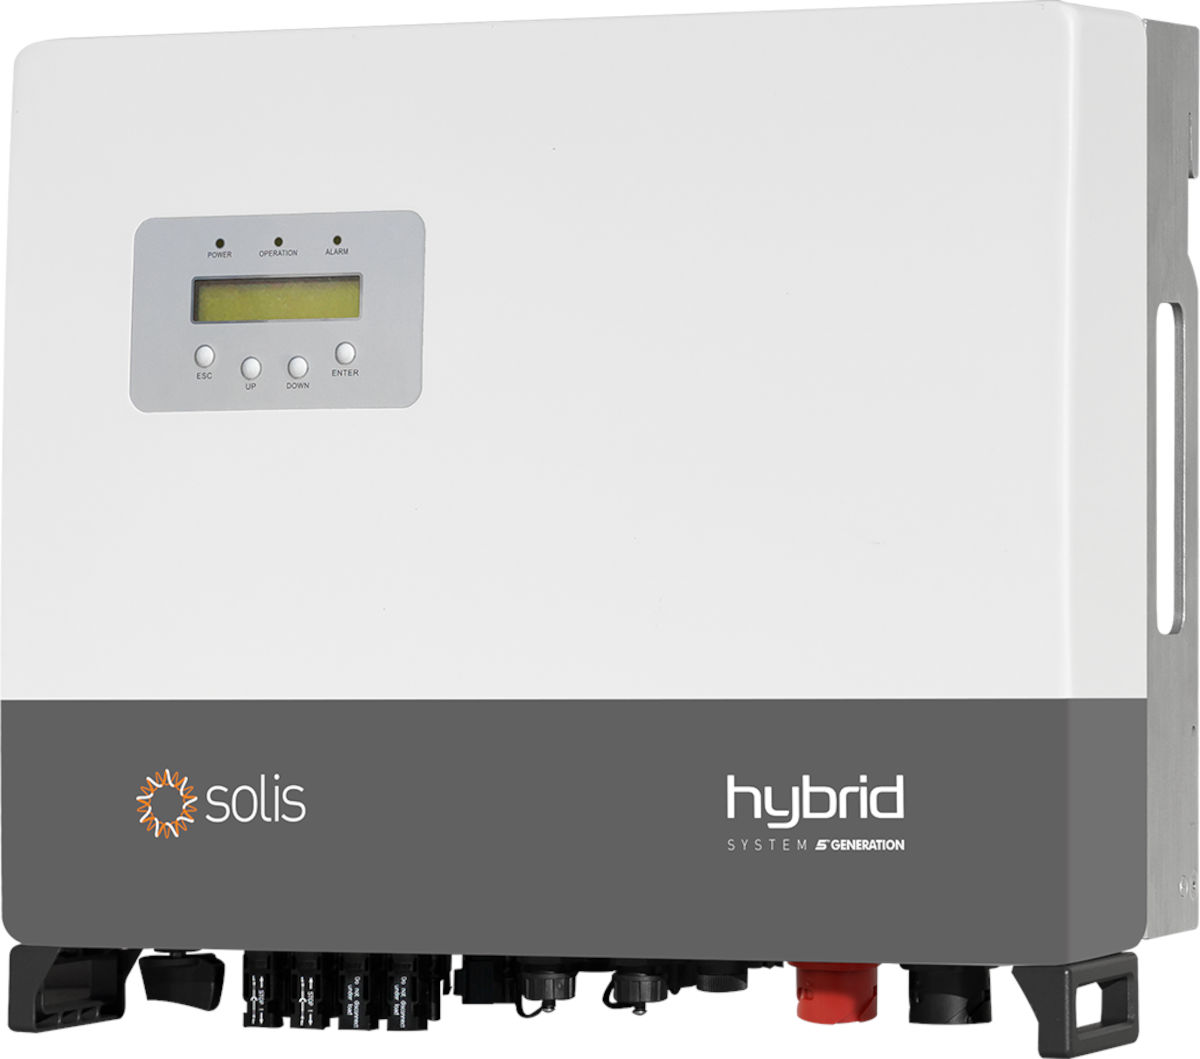 Solis Hybrid-Wechselrichter RHI-3P8K, Seitlichfrontale Ansicht, auf weißem Hintergrund